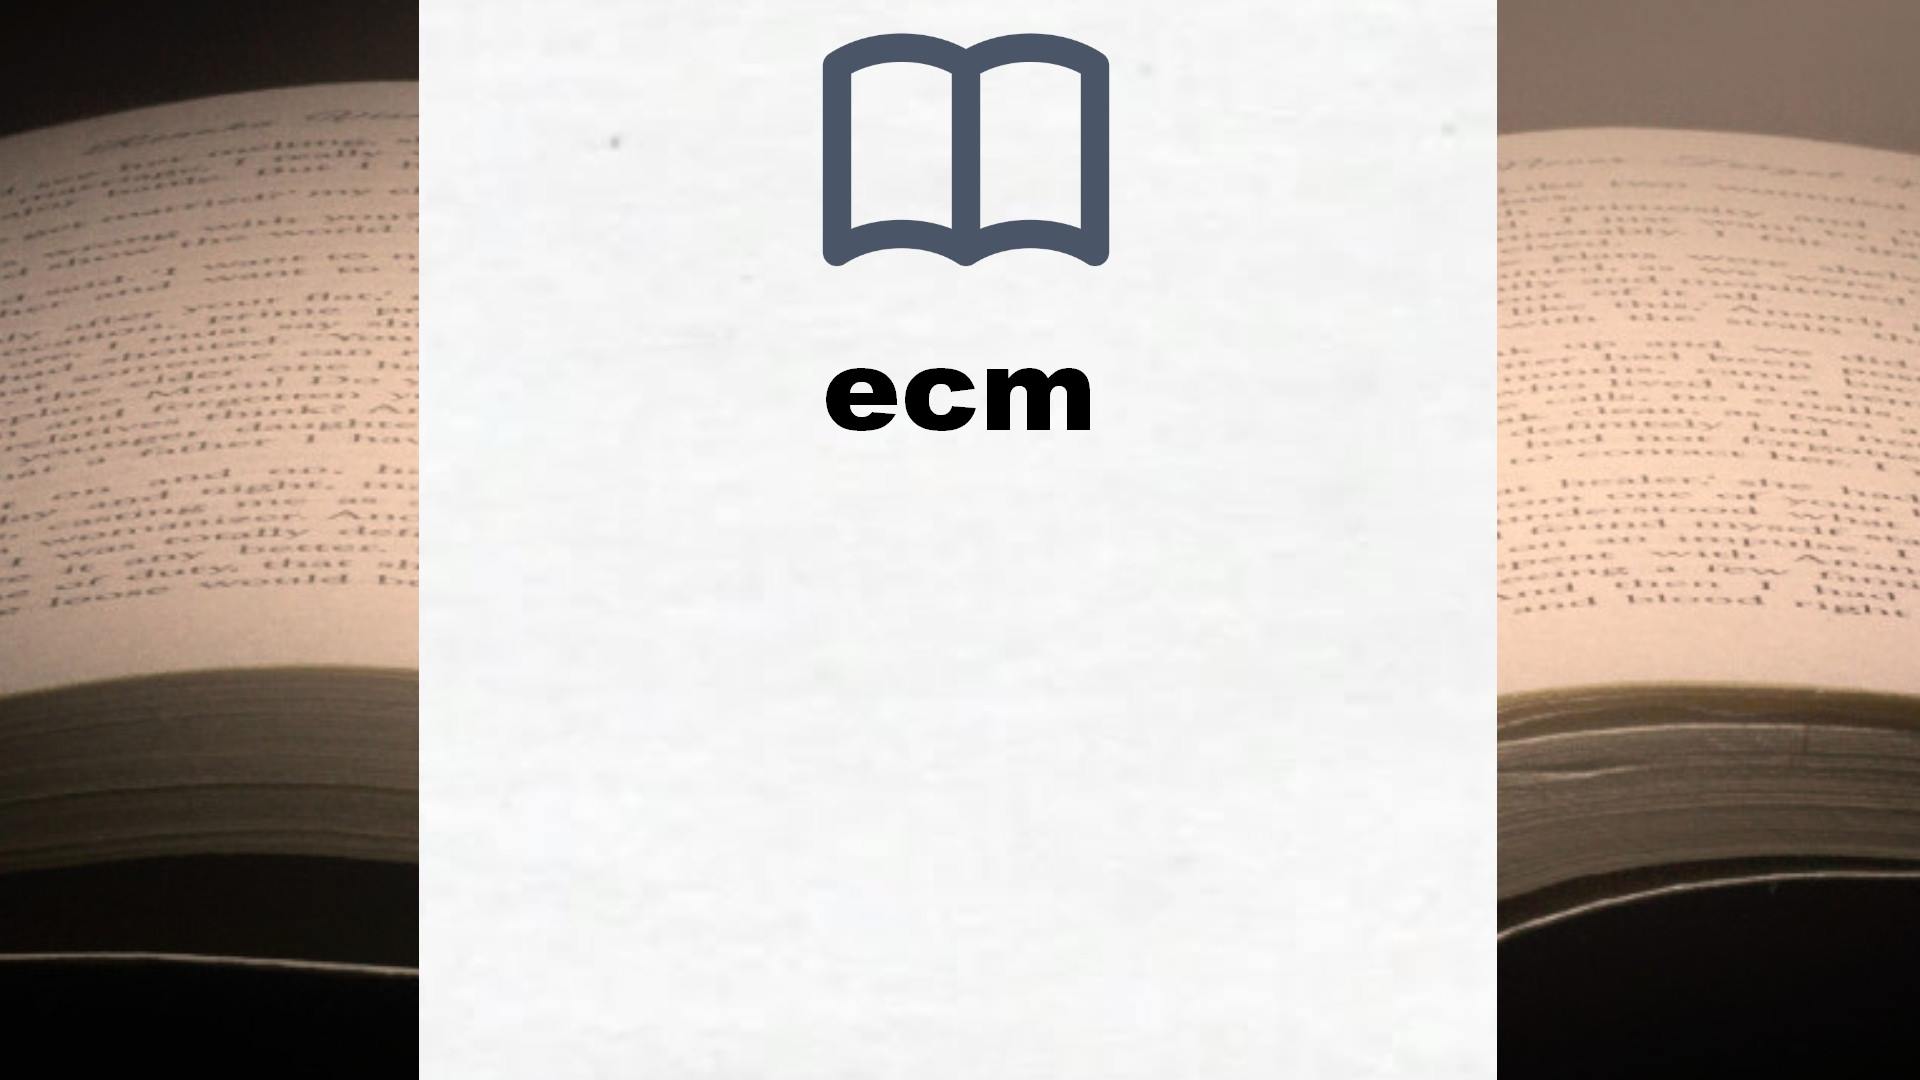 Libros sobre ecm